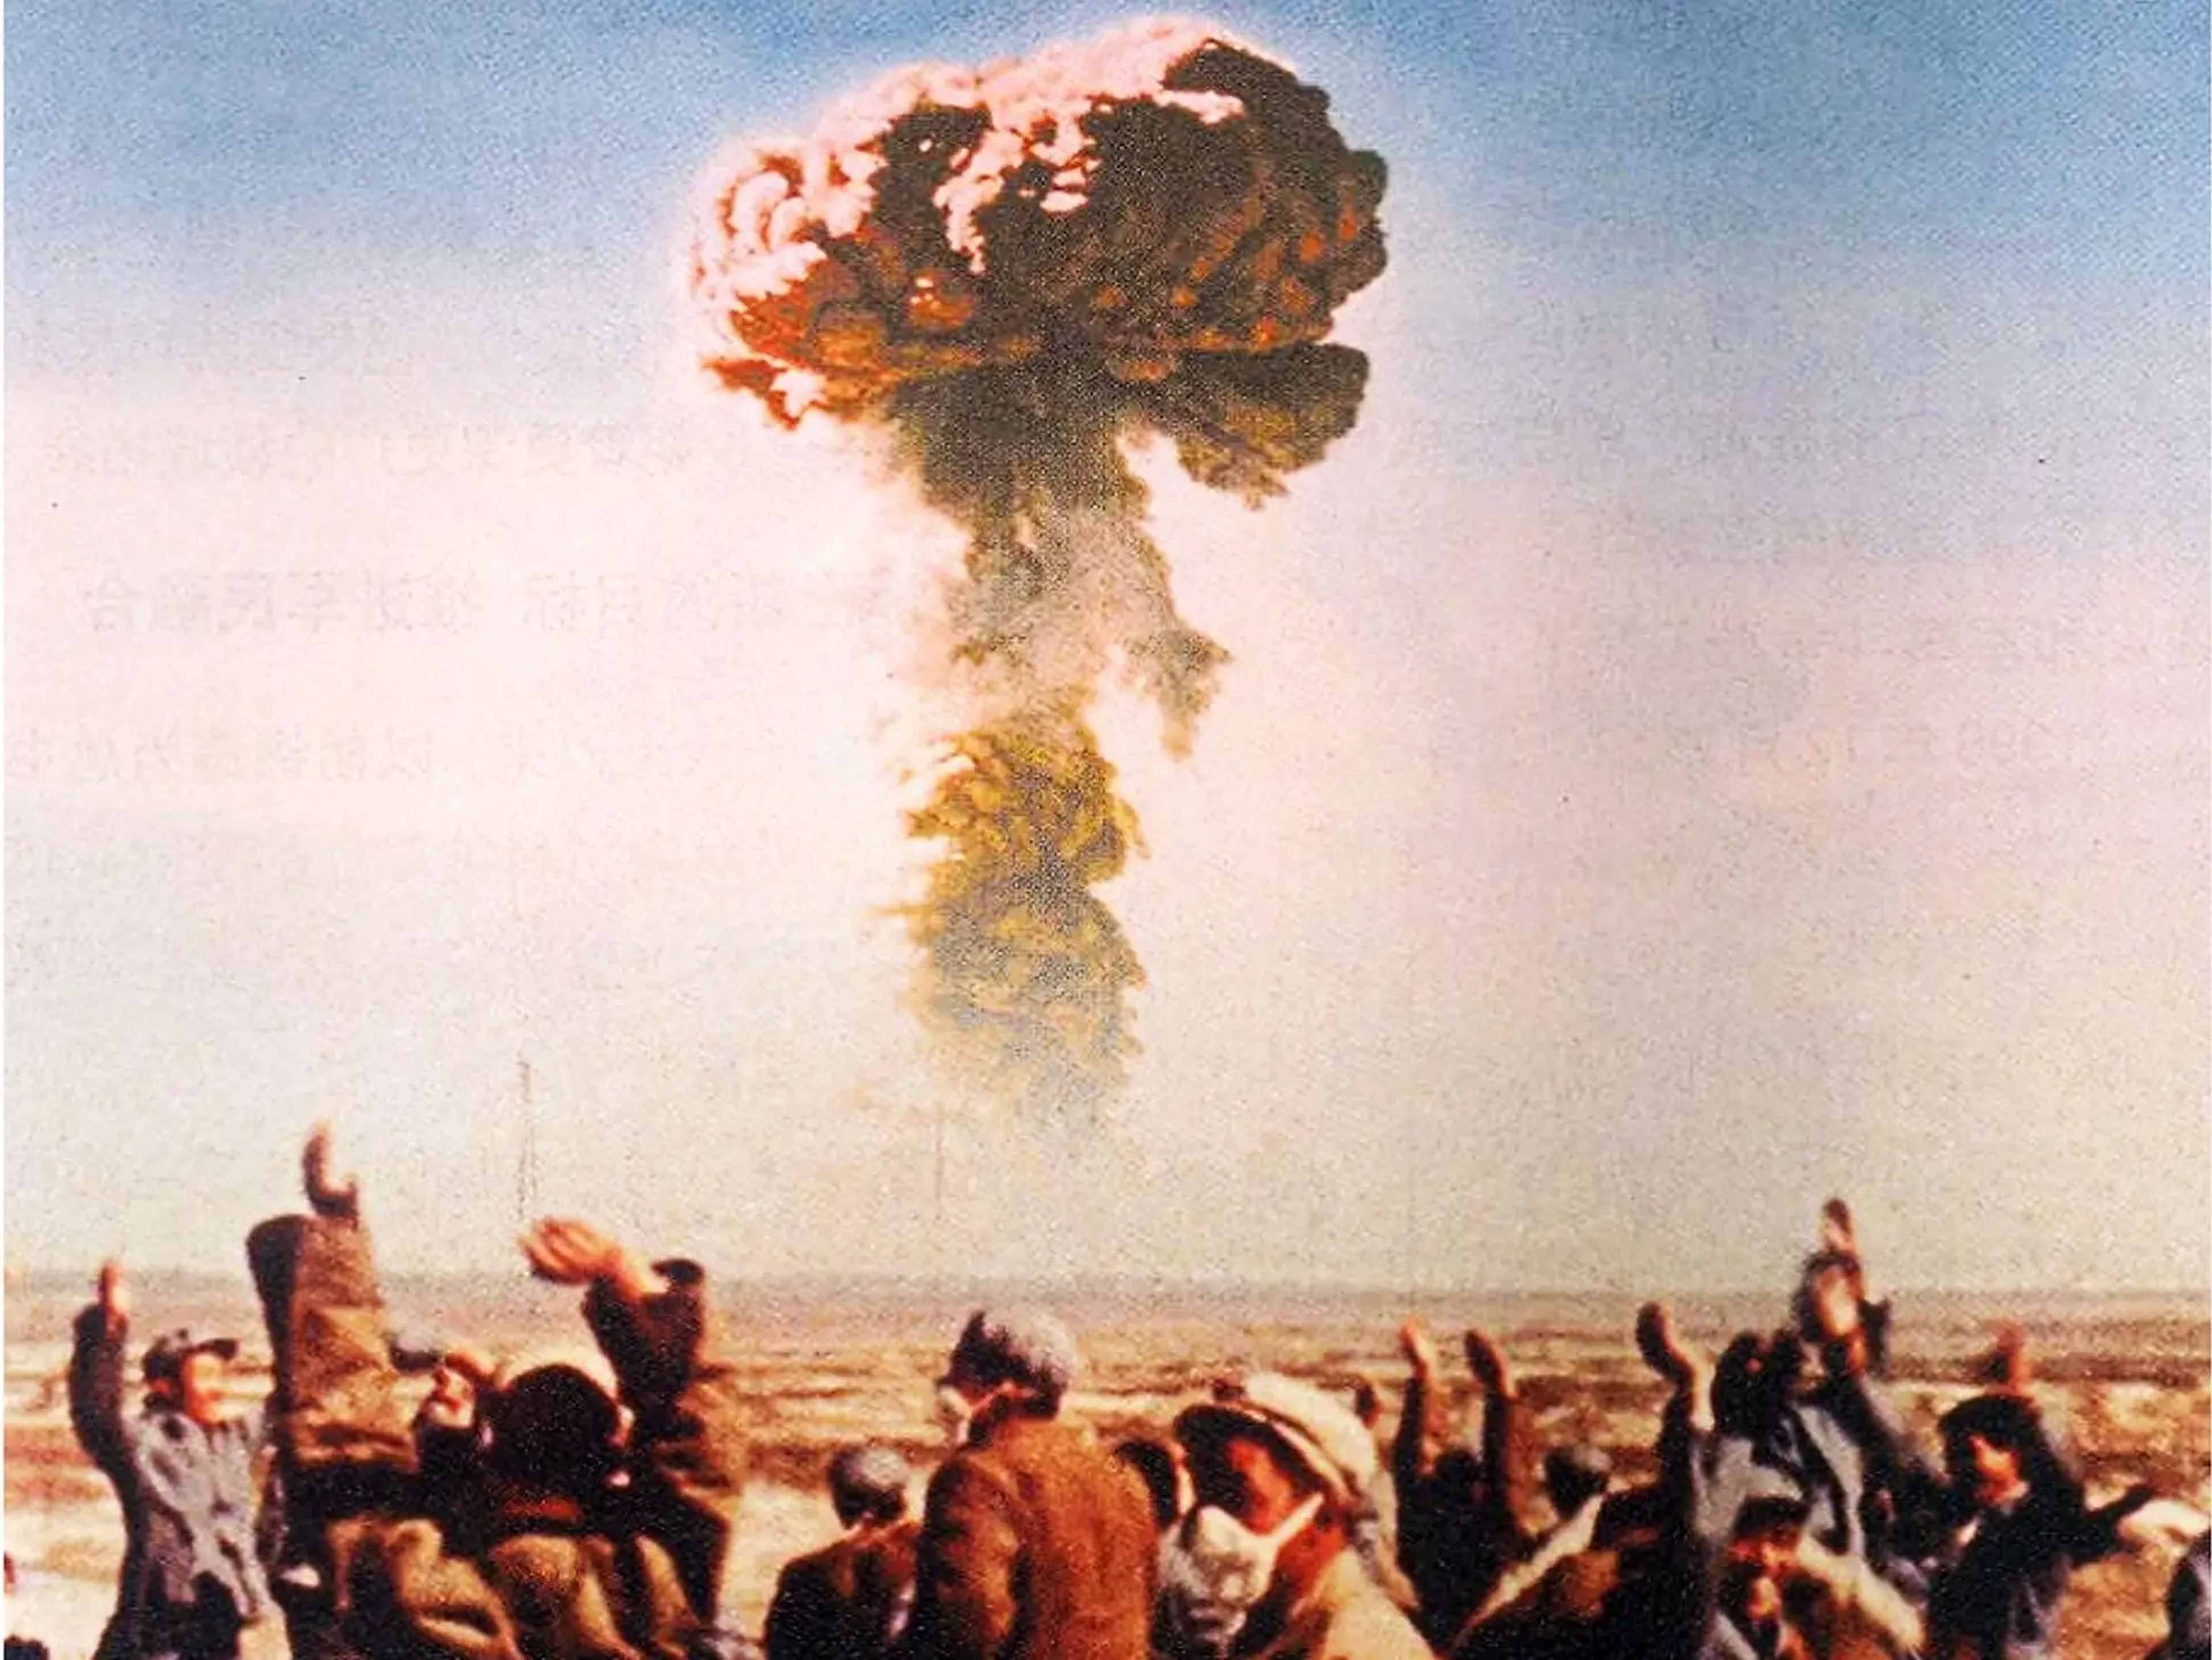 Trabajadores y técnicos en la base de pruebas nucleares de Lop Nur, en Xinjiang, celebran la primera explosión de una bomba nuclear china el 16 de octubre de 1964.